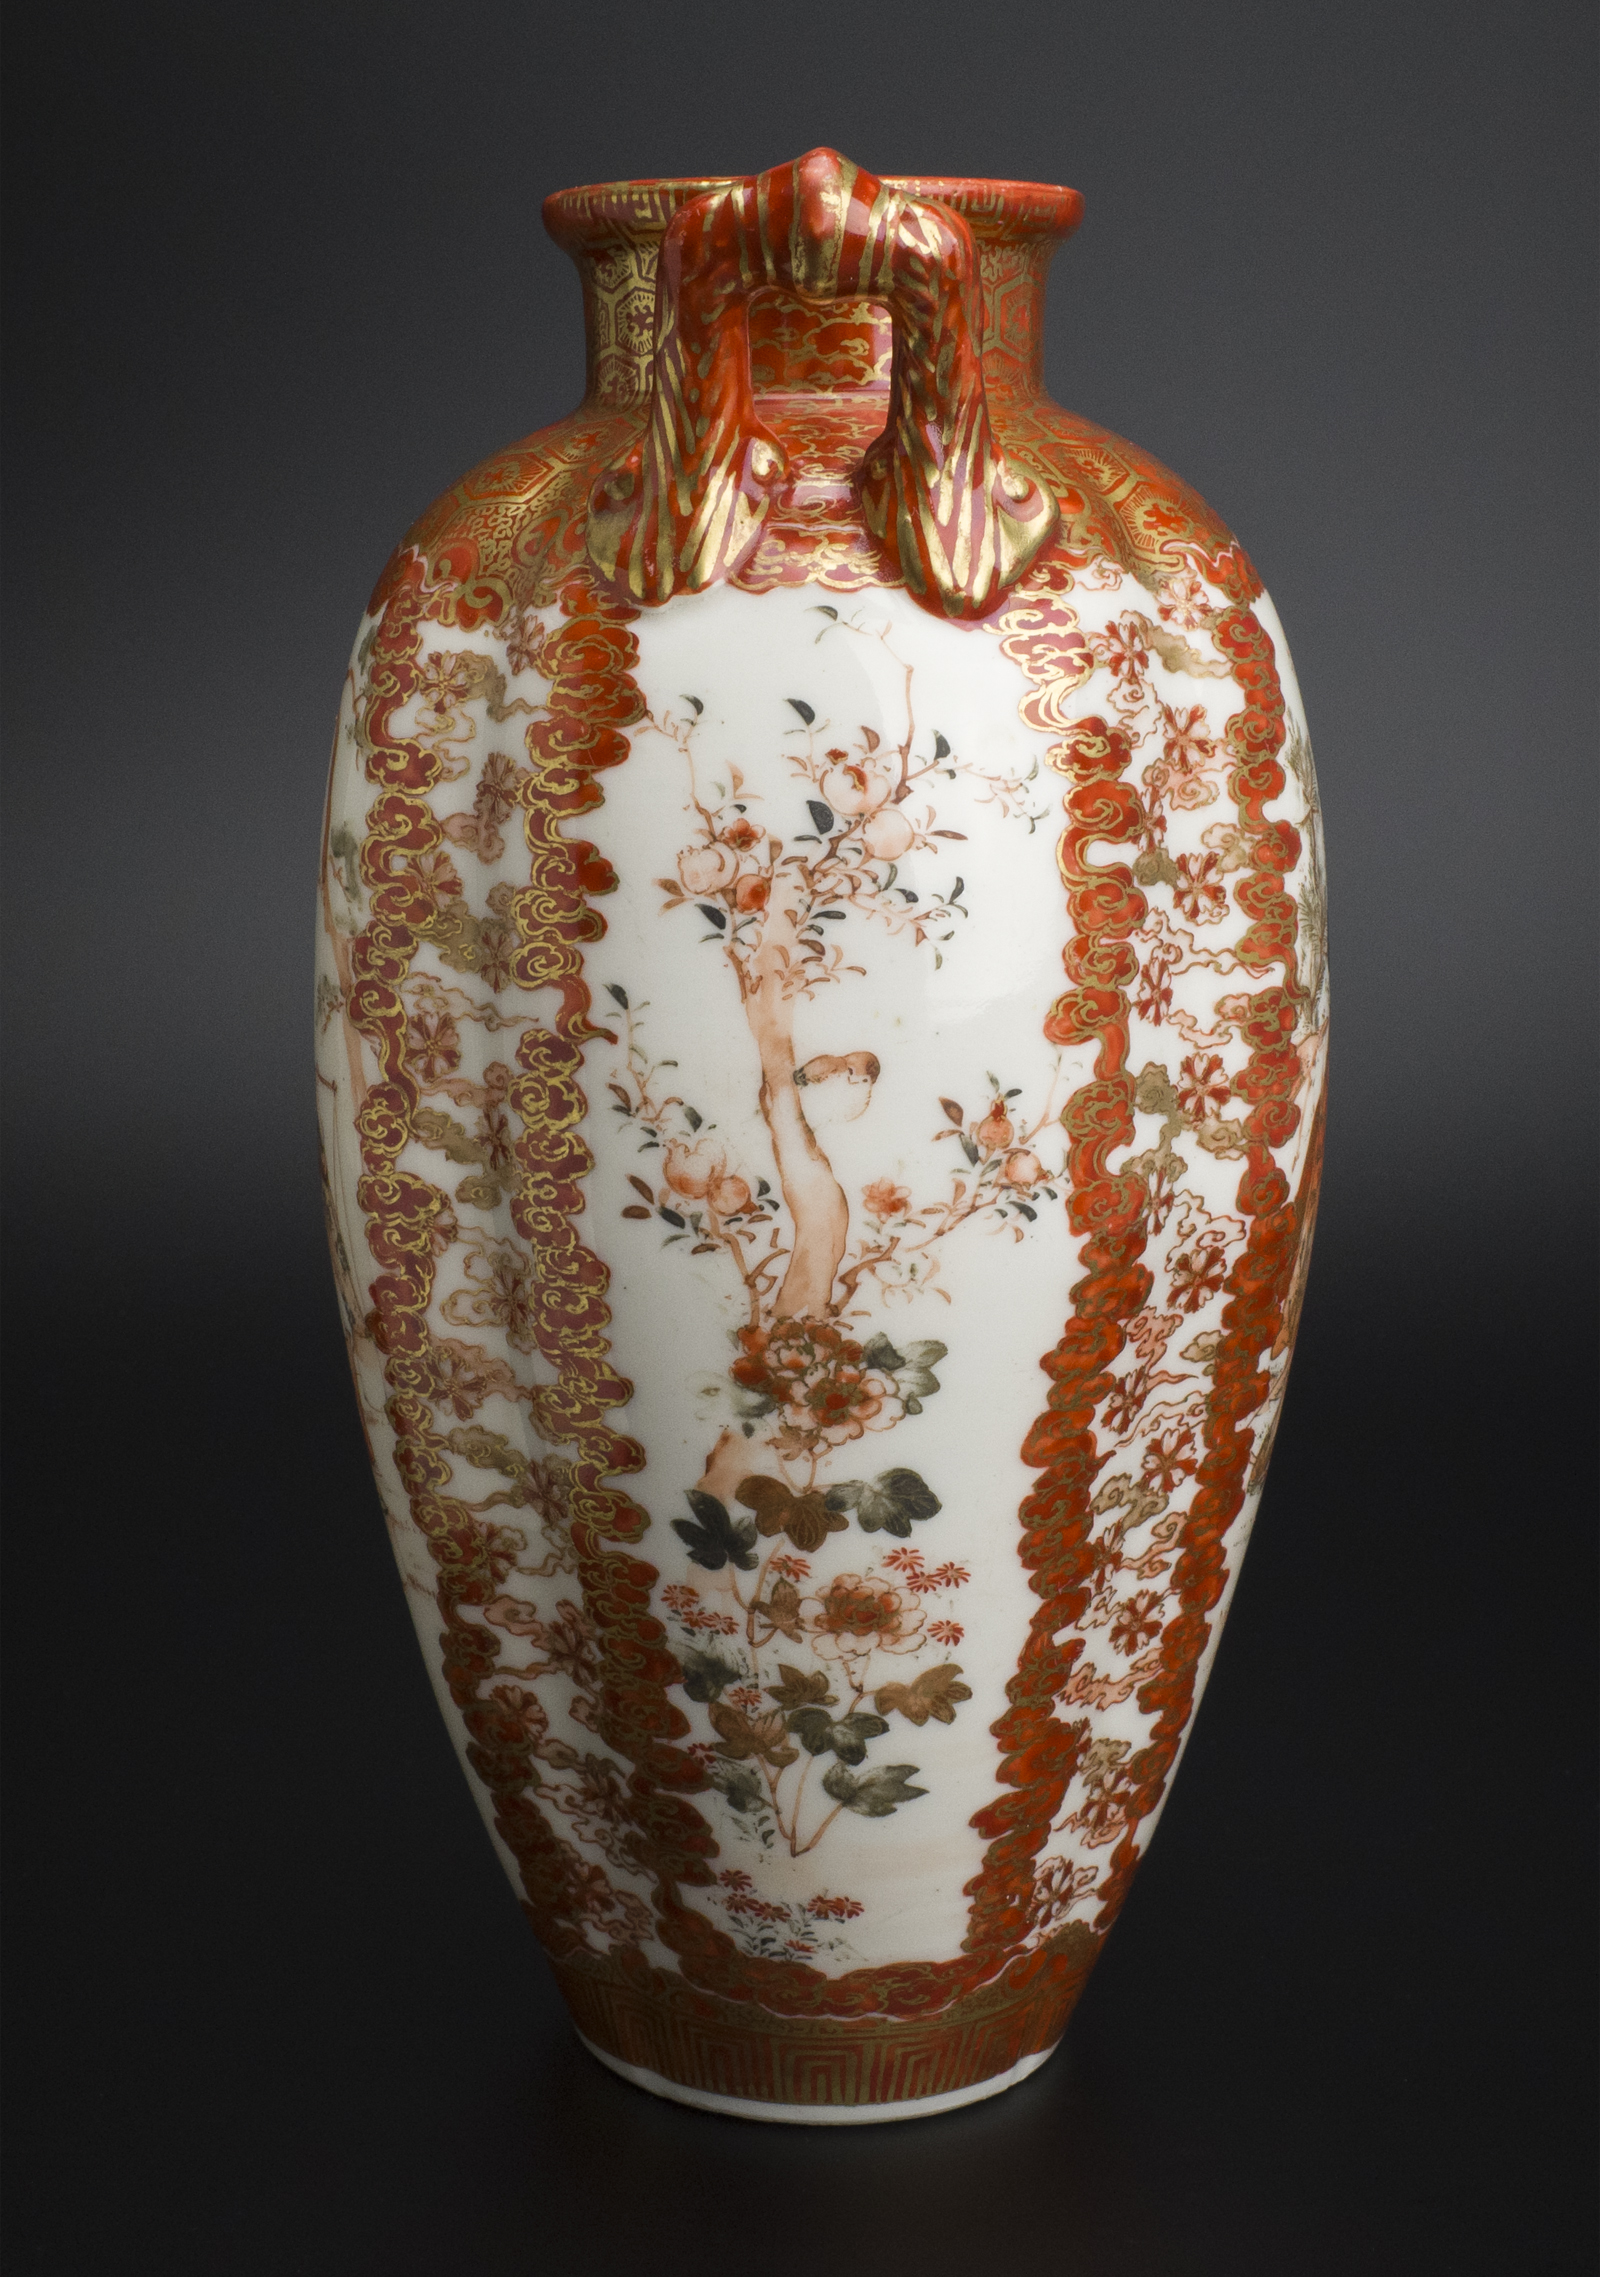 値段加賀九谷綿野製 金彩人物紋瓶 明治時代 古美術 花器、壷